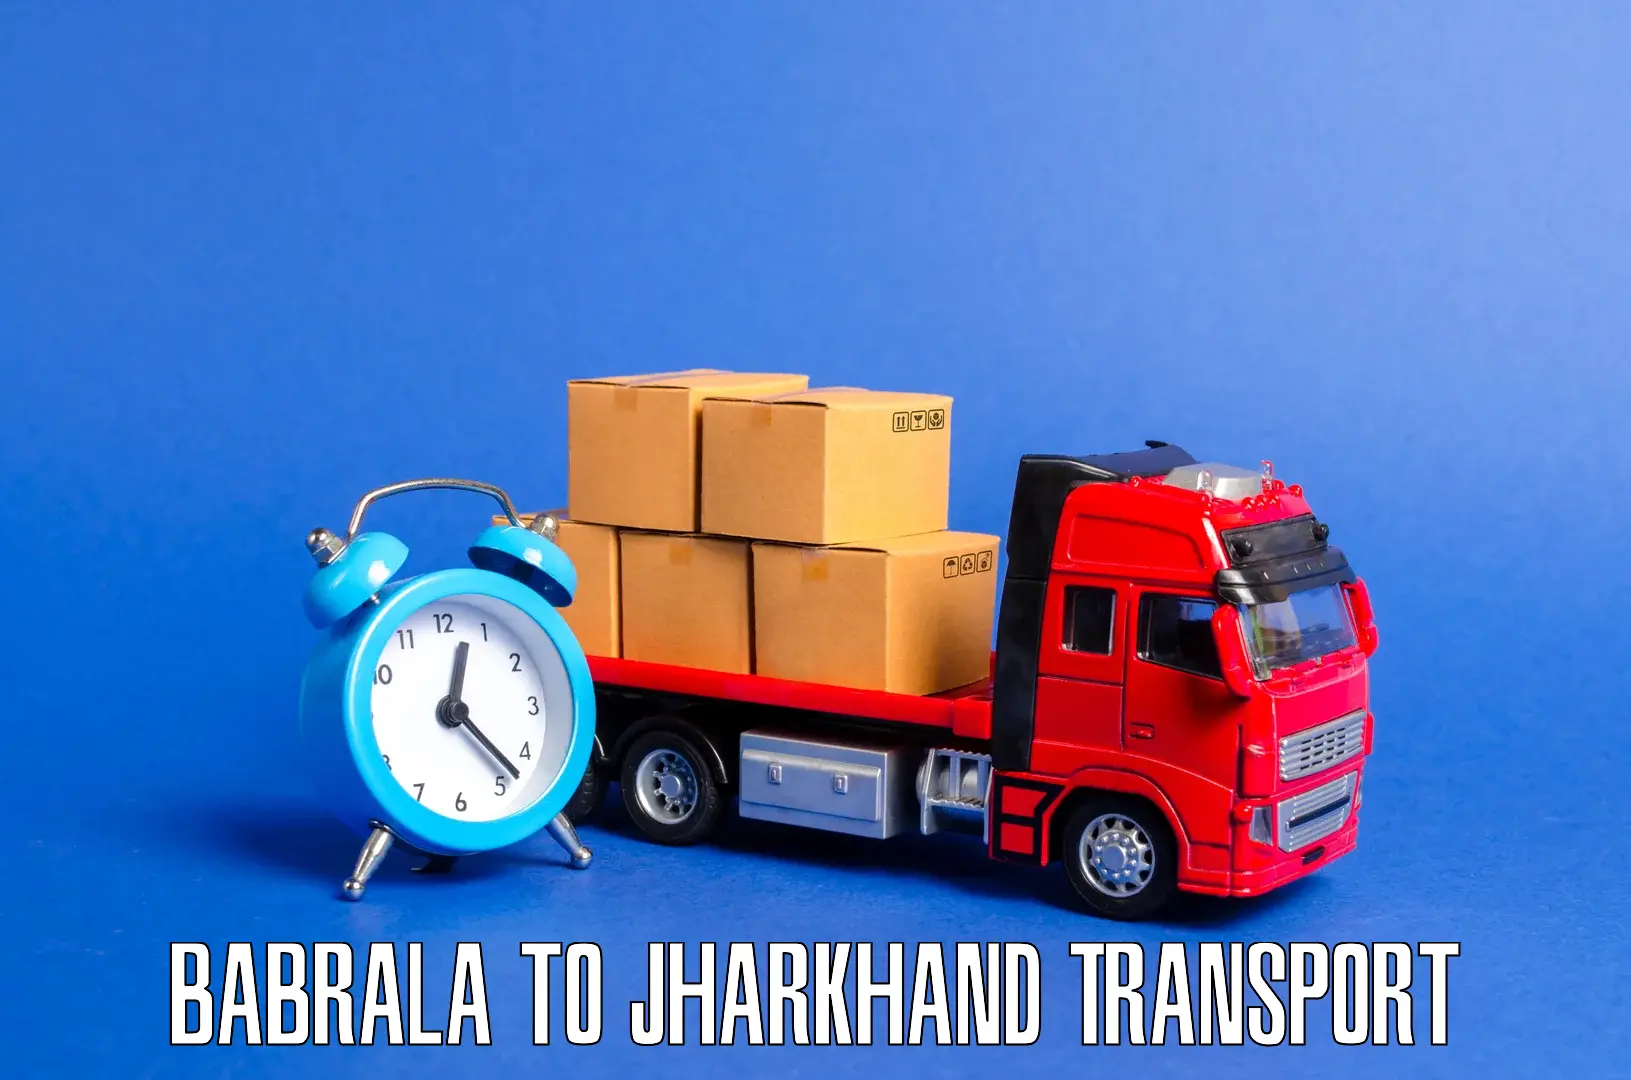 Express transport services Babrala to Chandankiyari